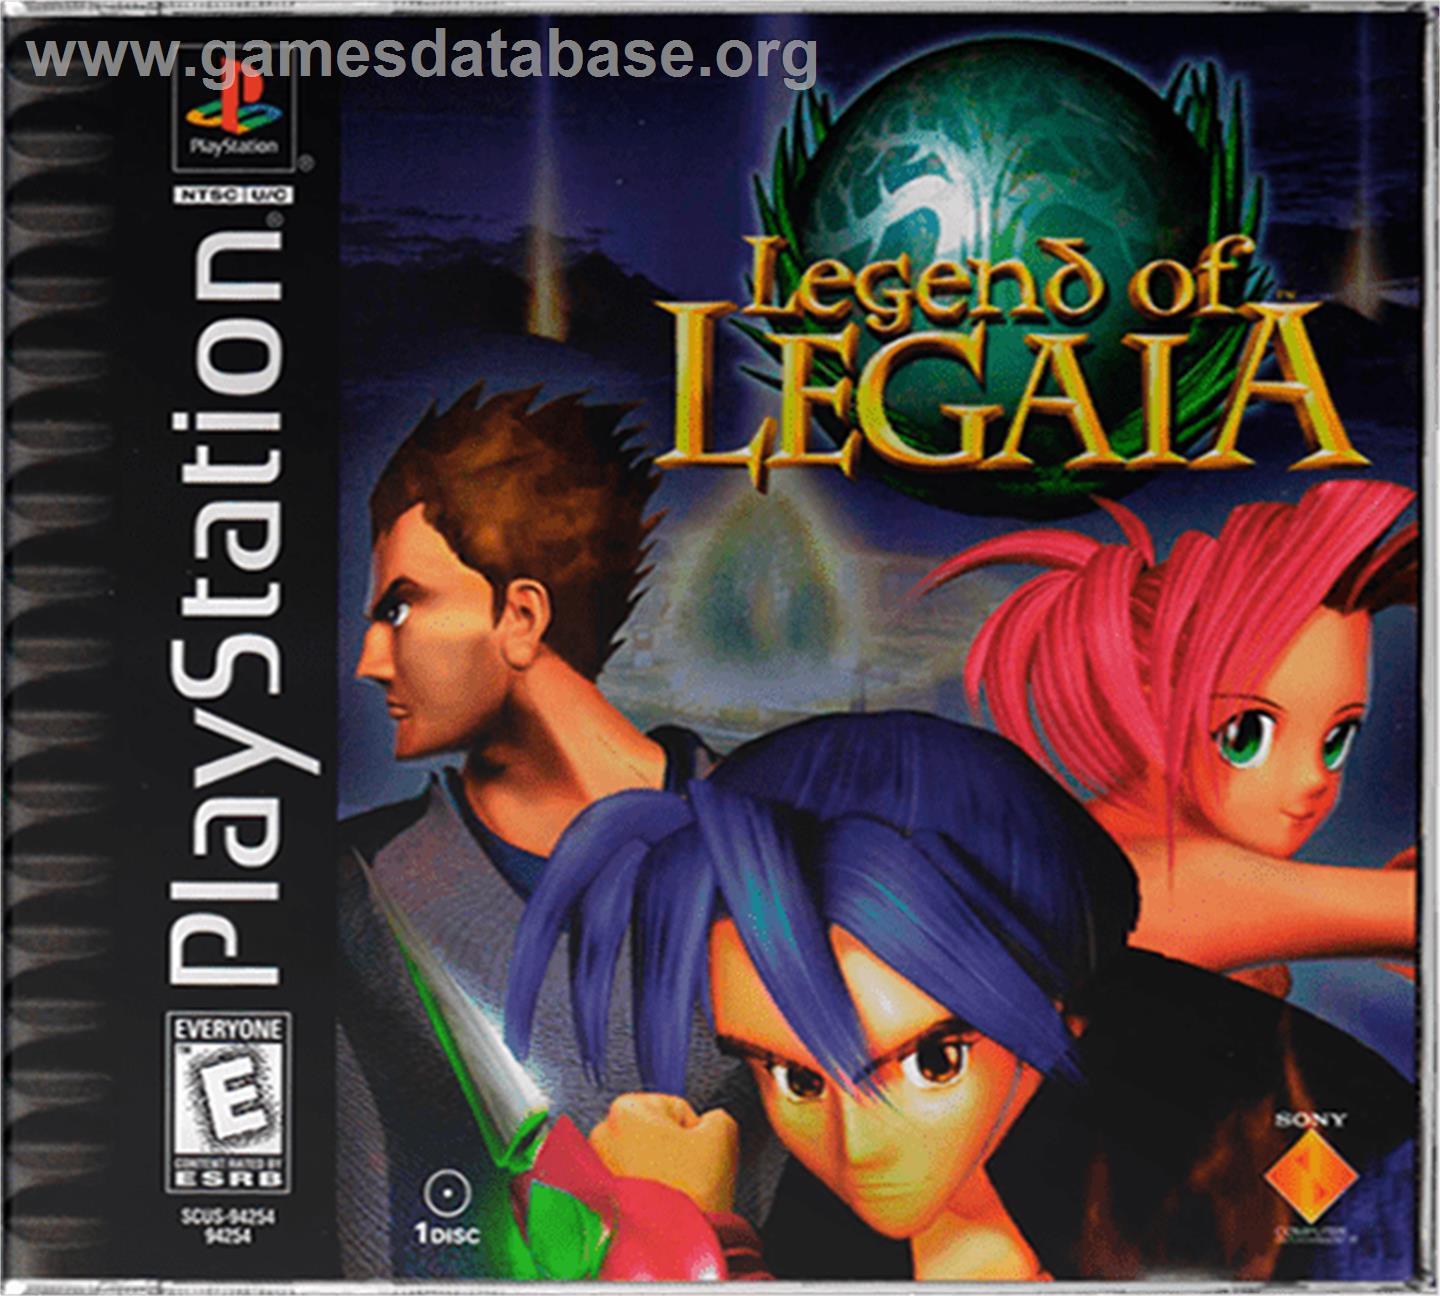 Legend of Legaia - Sony Playstation - Artwork - Box